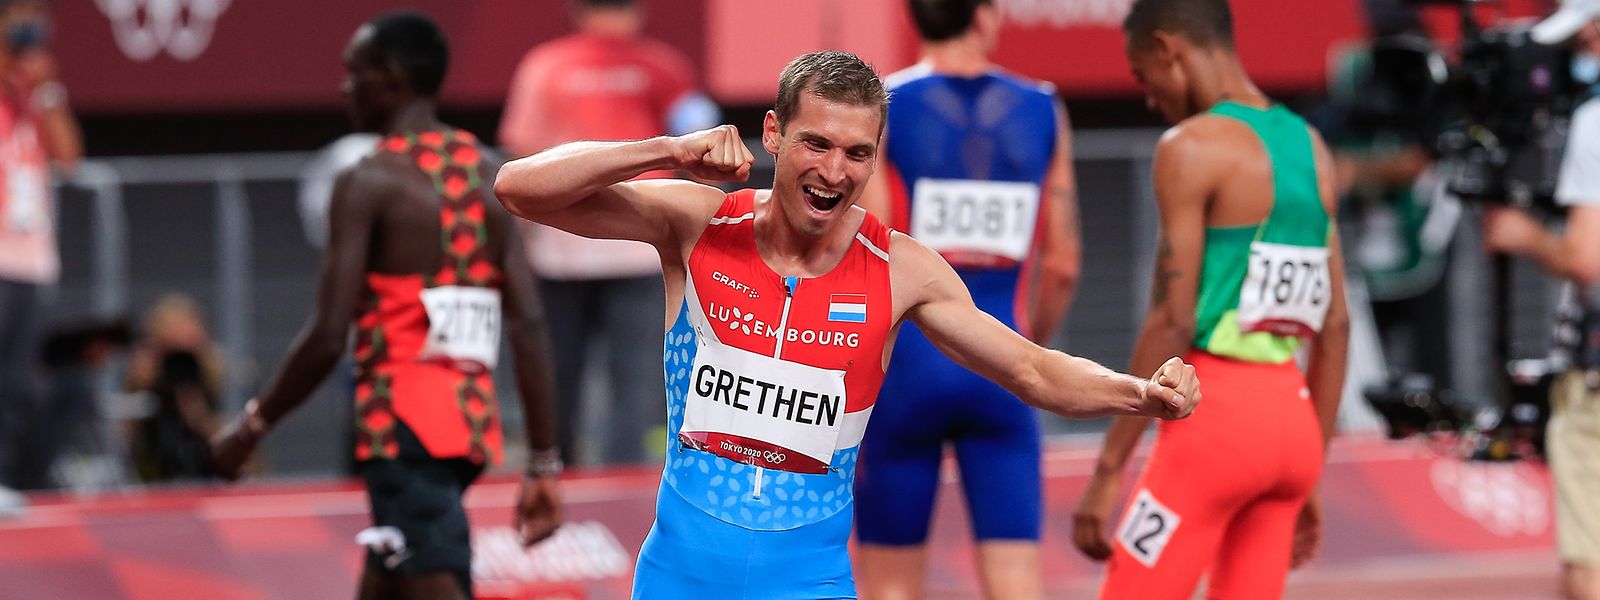 Charles Grethen freut sich über seinen neuen Landesrekord und den Finaleinzug.